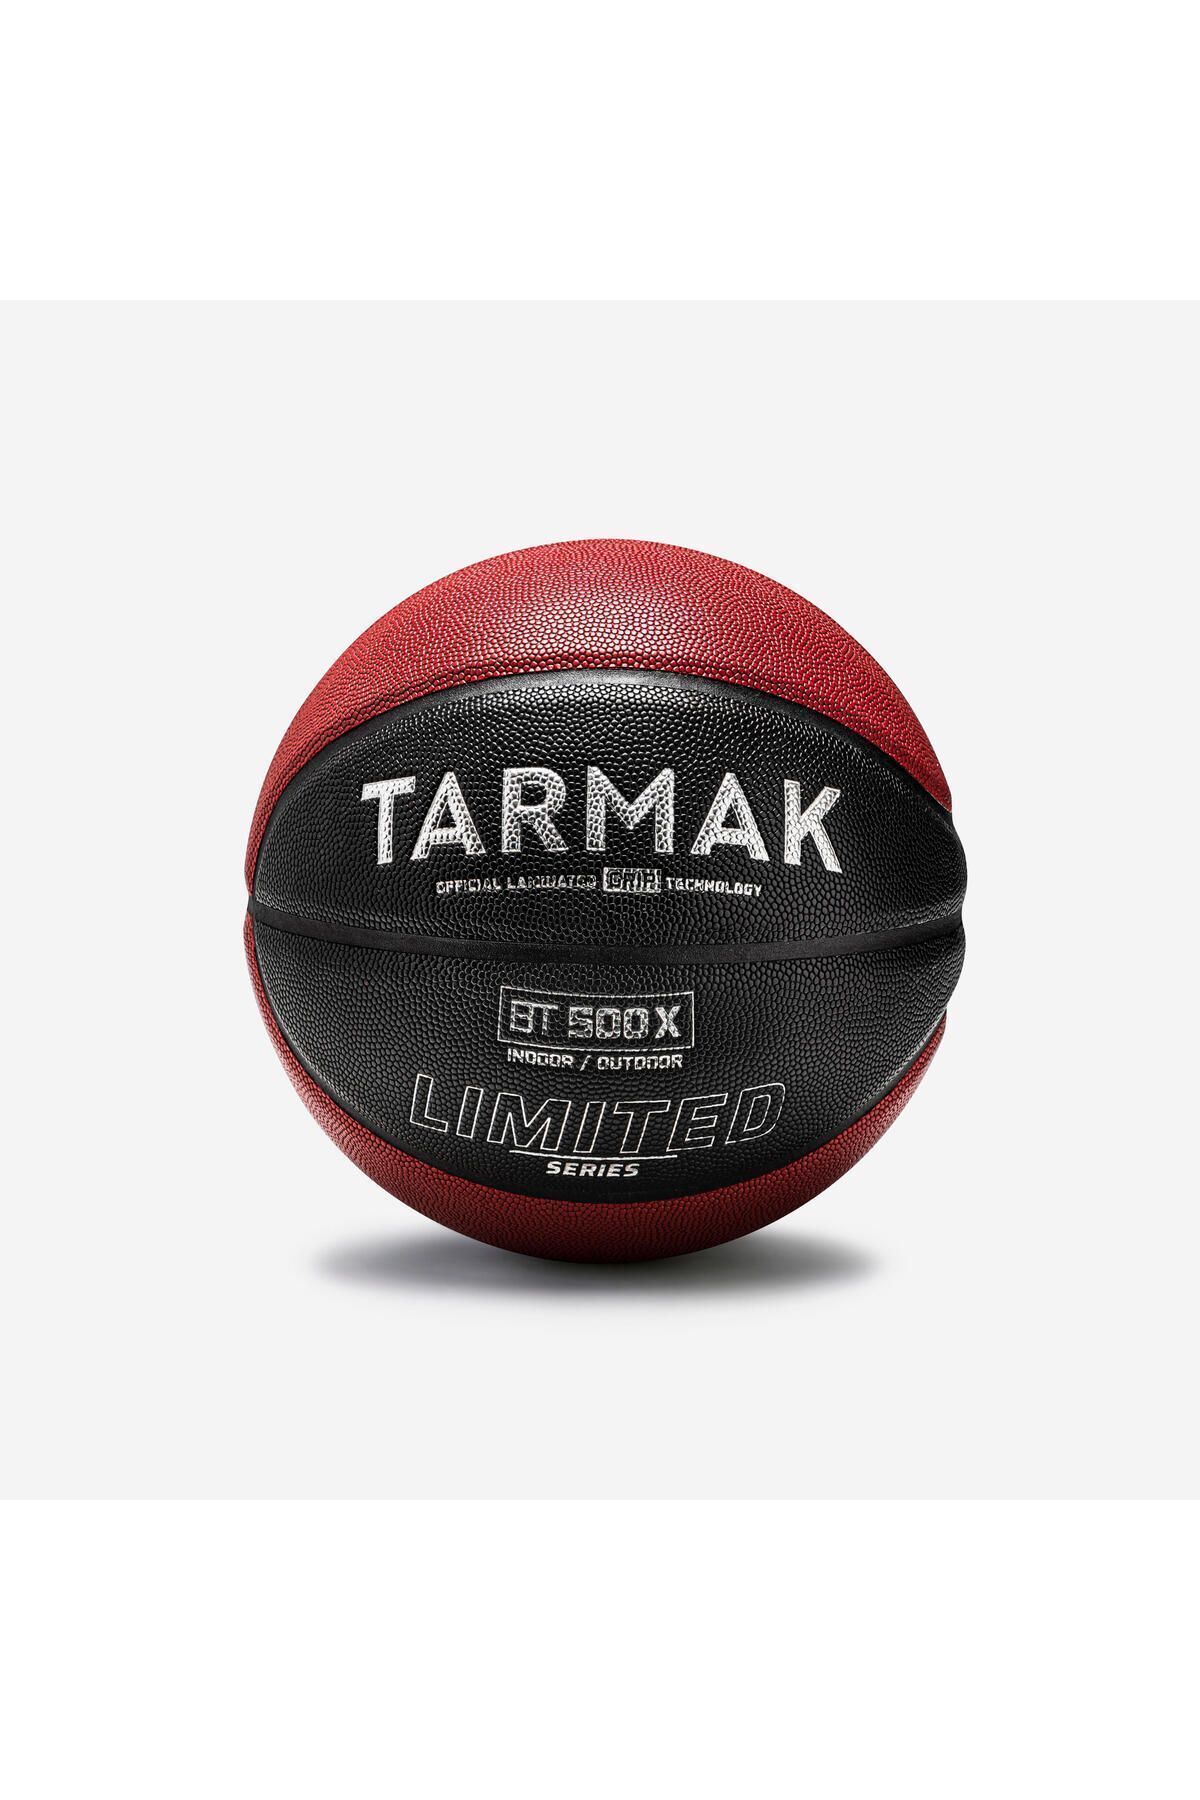 Decathlon Basketbol Topu - 7 Numara - Kırmızı/siyah - Bt500 Grip Ltd